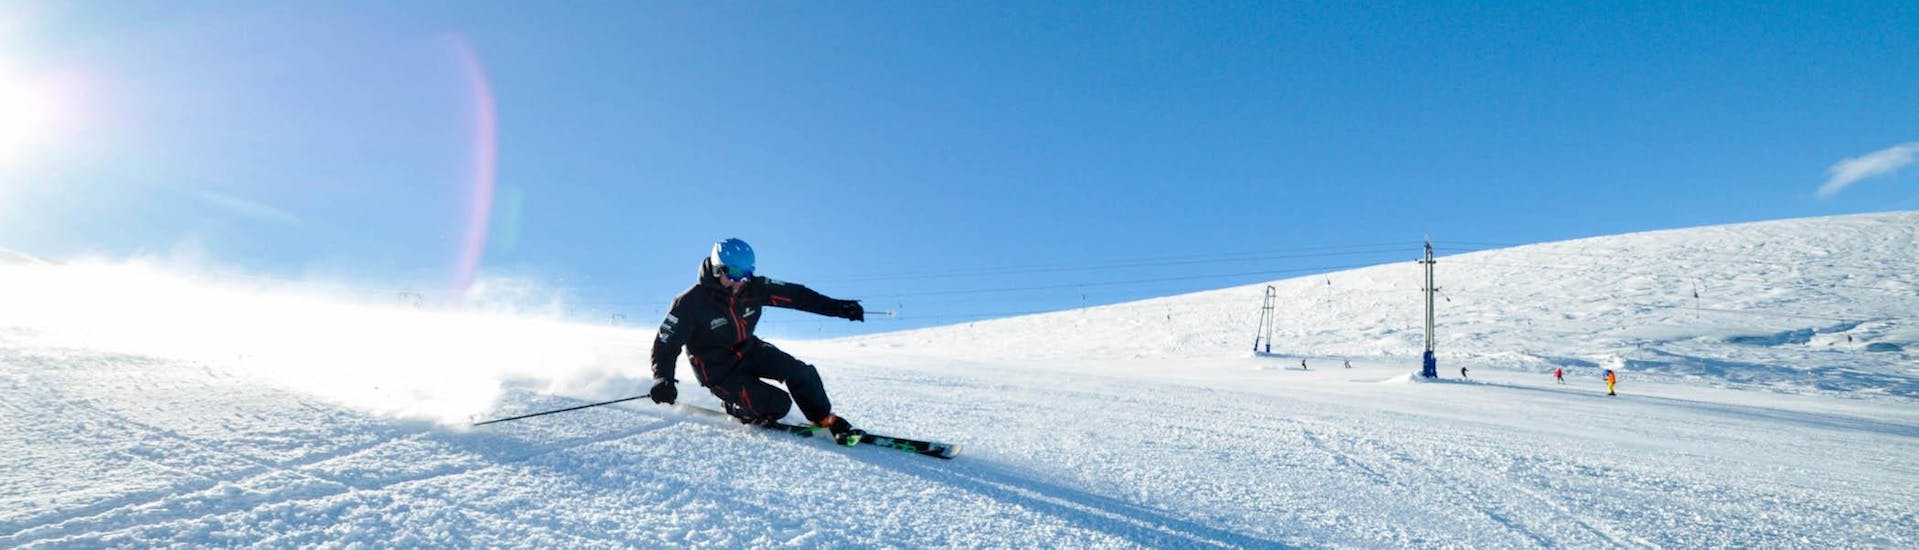 Clases particulares de esquí telemark para todos los niveles.